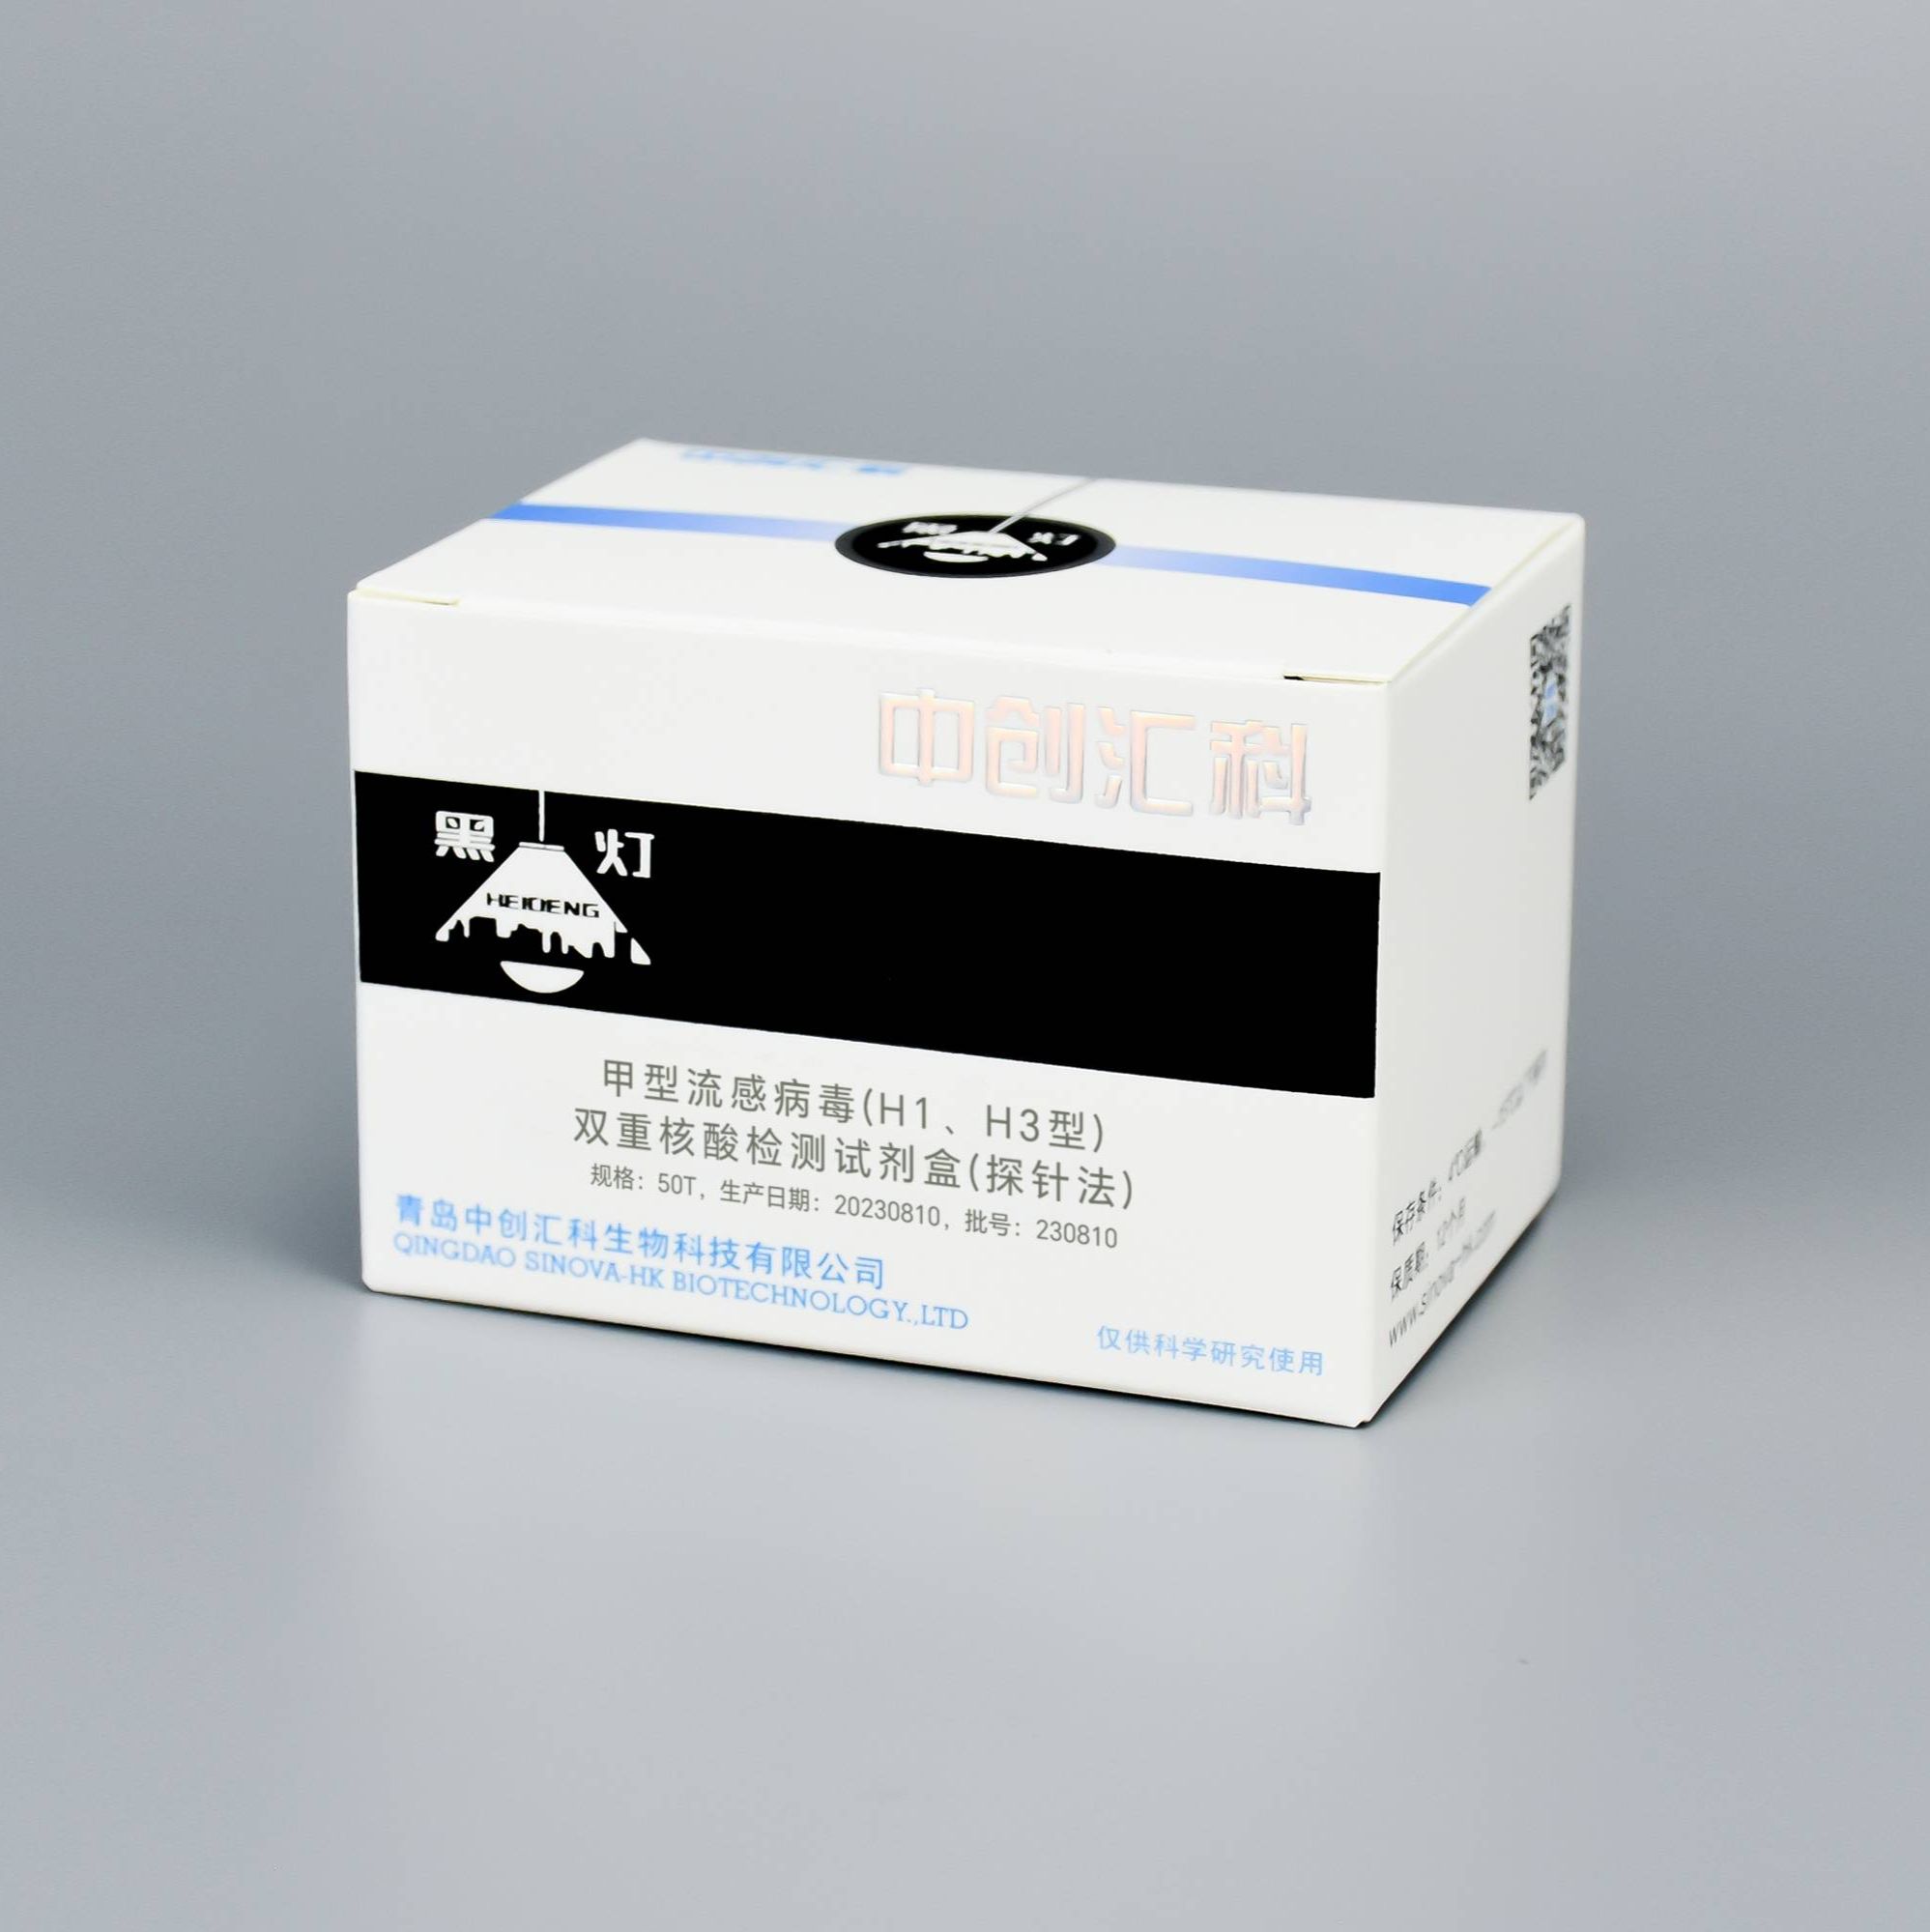 甲型流感病毒(H1、H3型)双重核酸检测试剂盒(探针法)